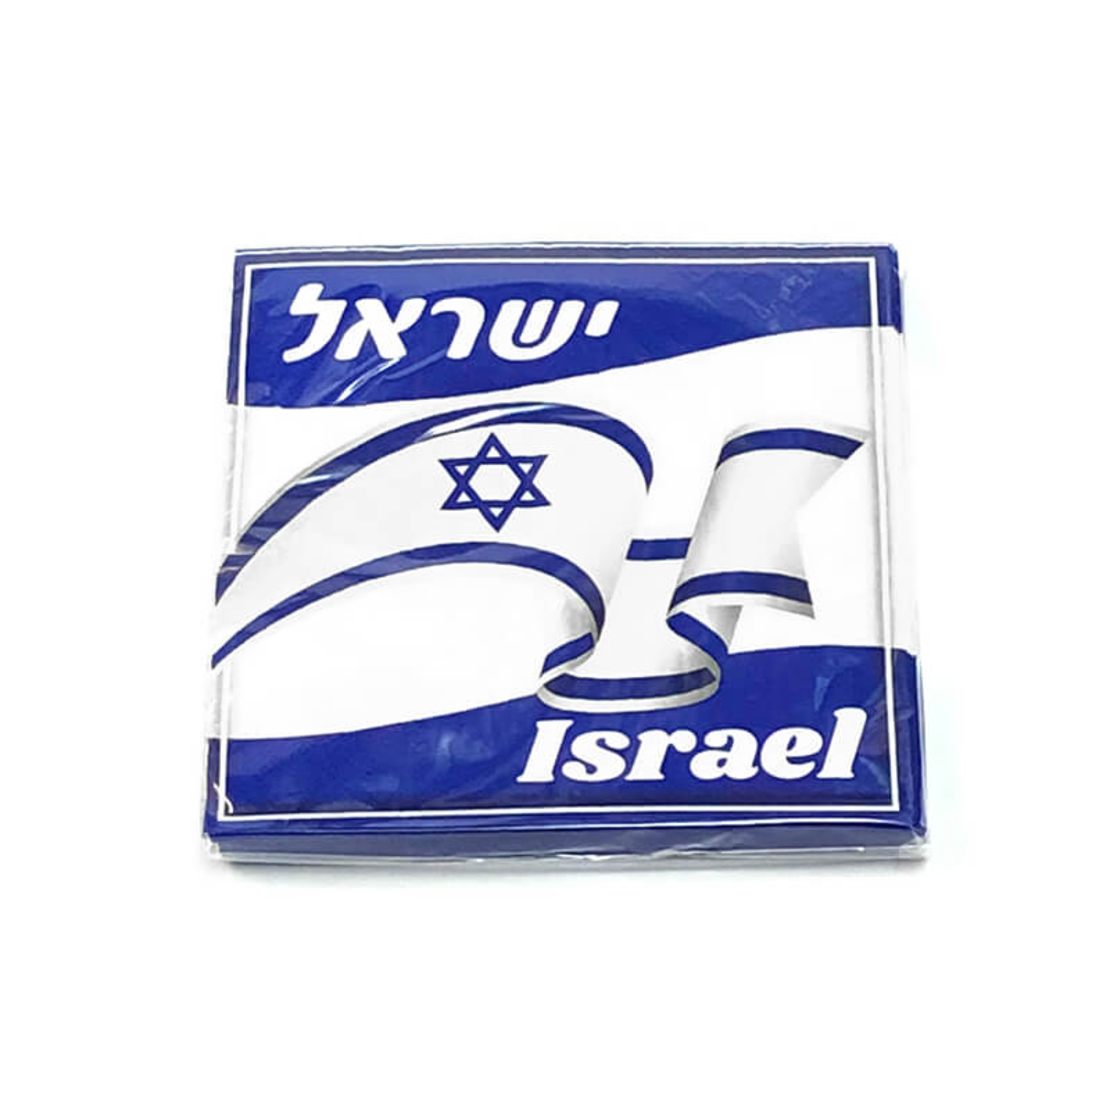 מפיות מעוצבות - דגל ישראל - דגם 2